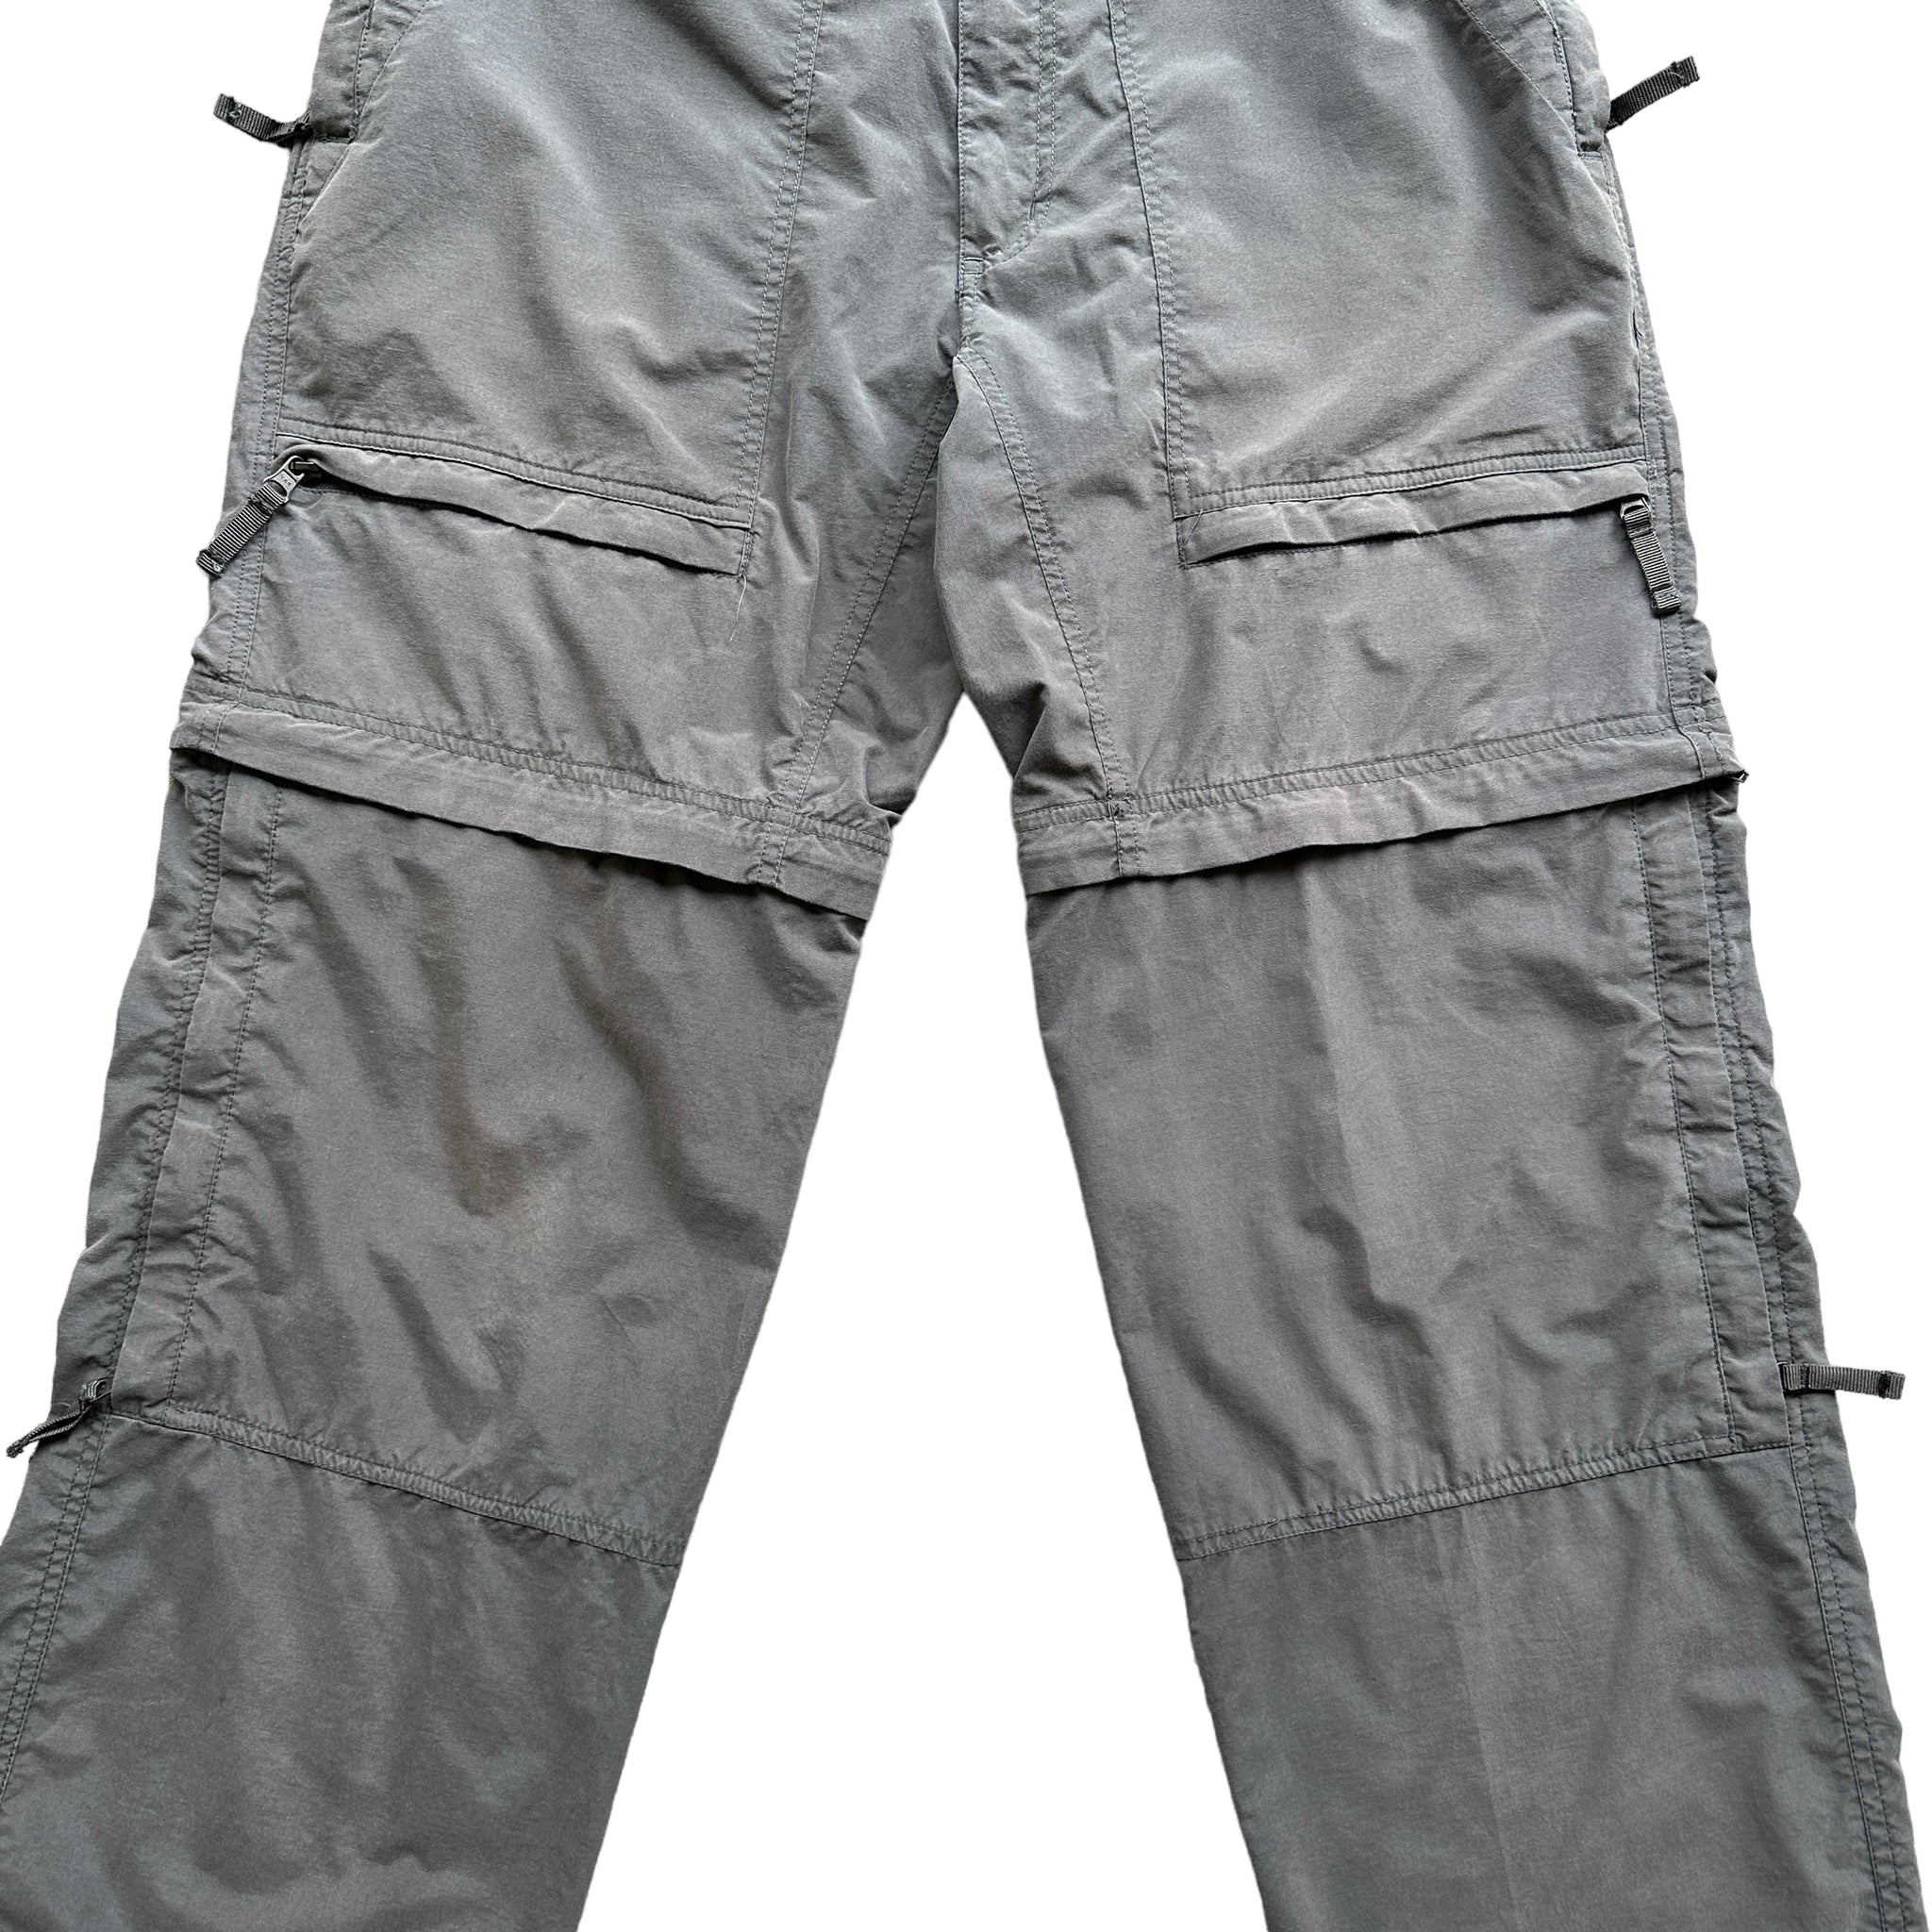 Zip off hiking cargo pants 32/30